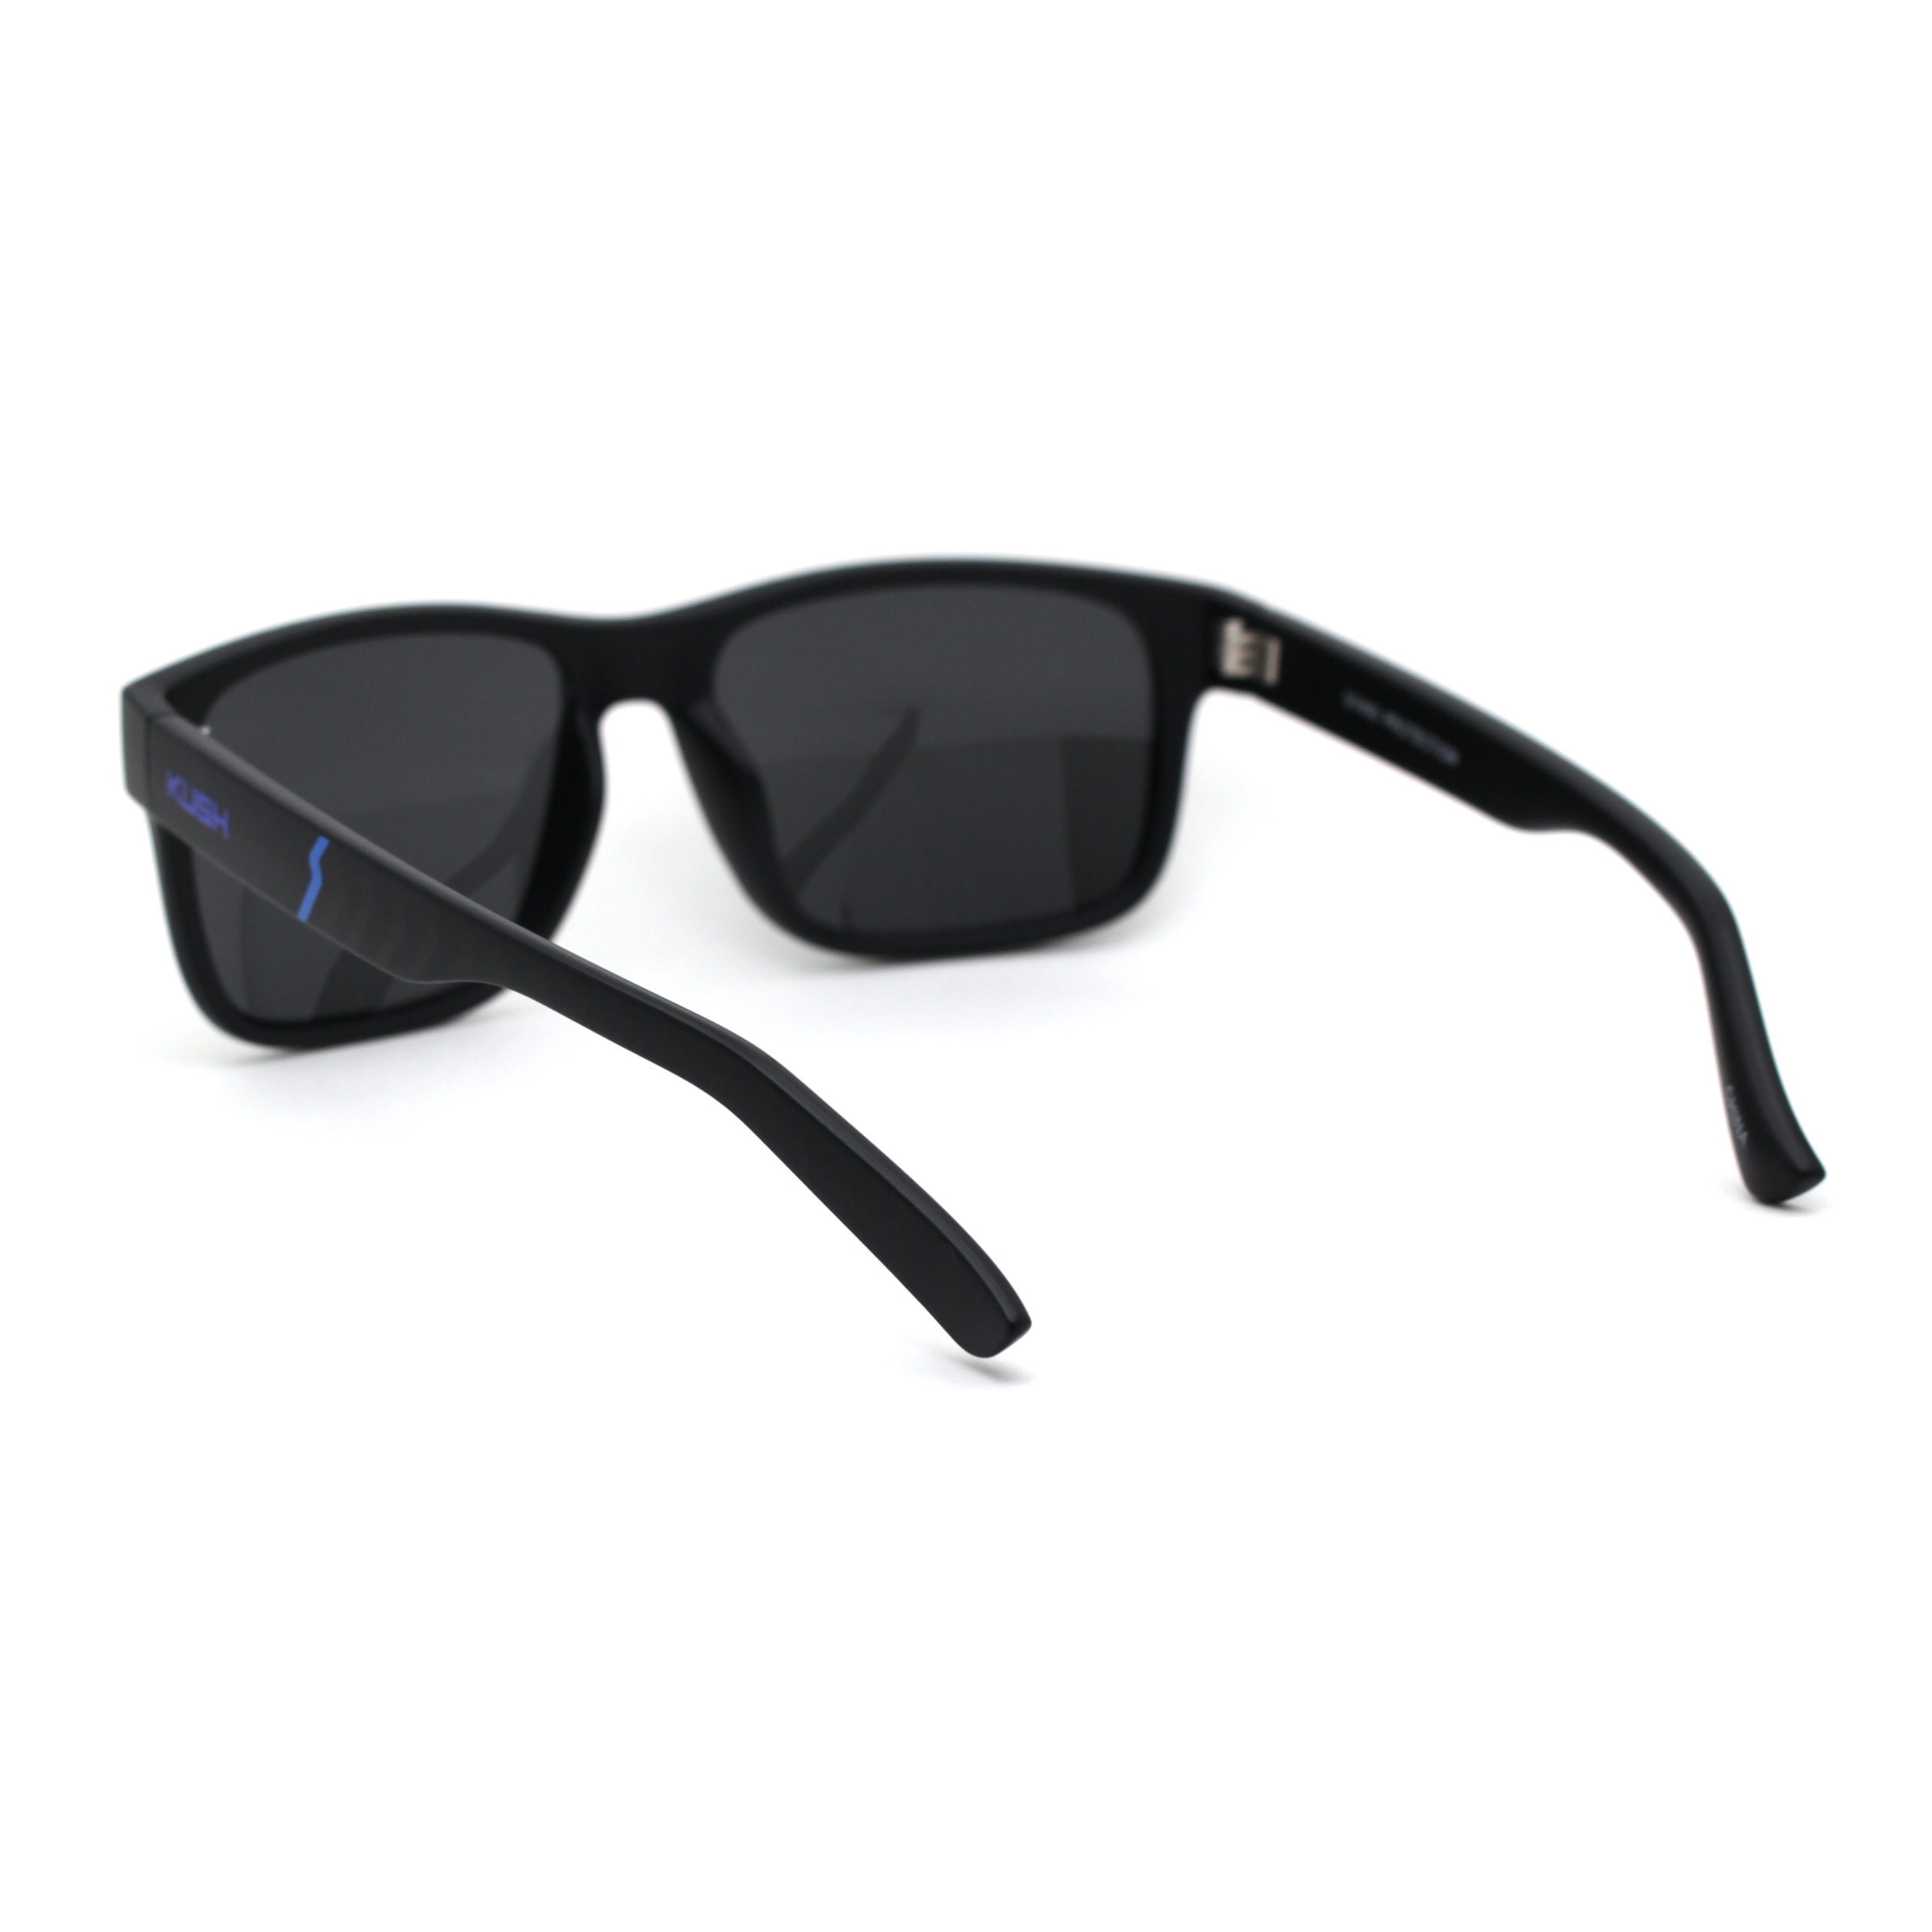 Kush Mens Black Lens Sport Horn Rim Sunglasses Matte Black Blue Black - image 4 of 4